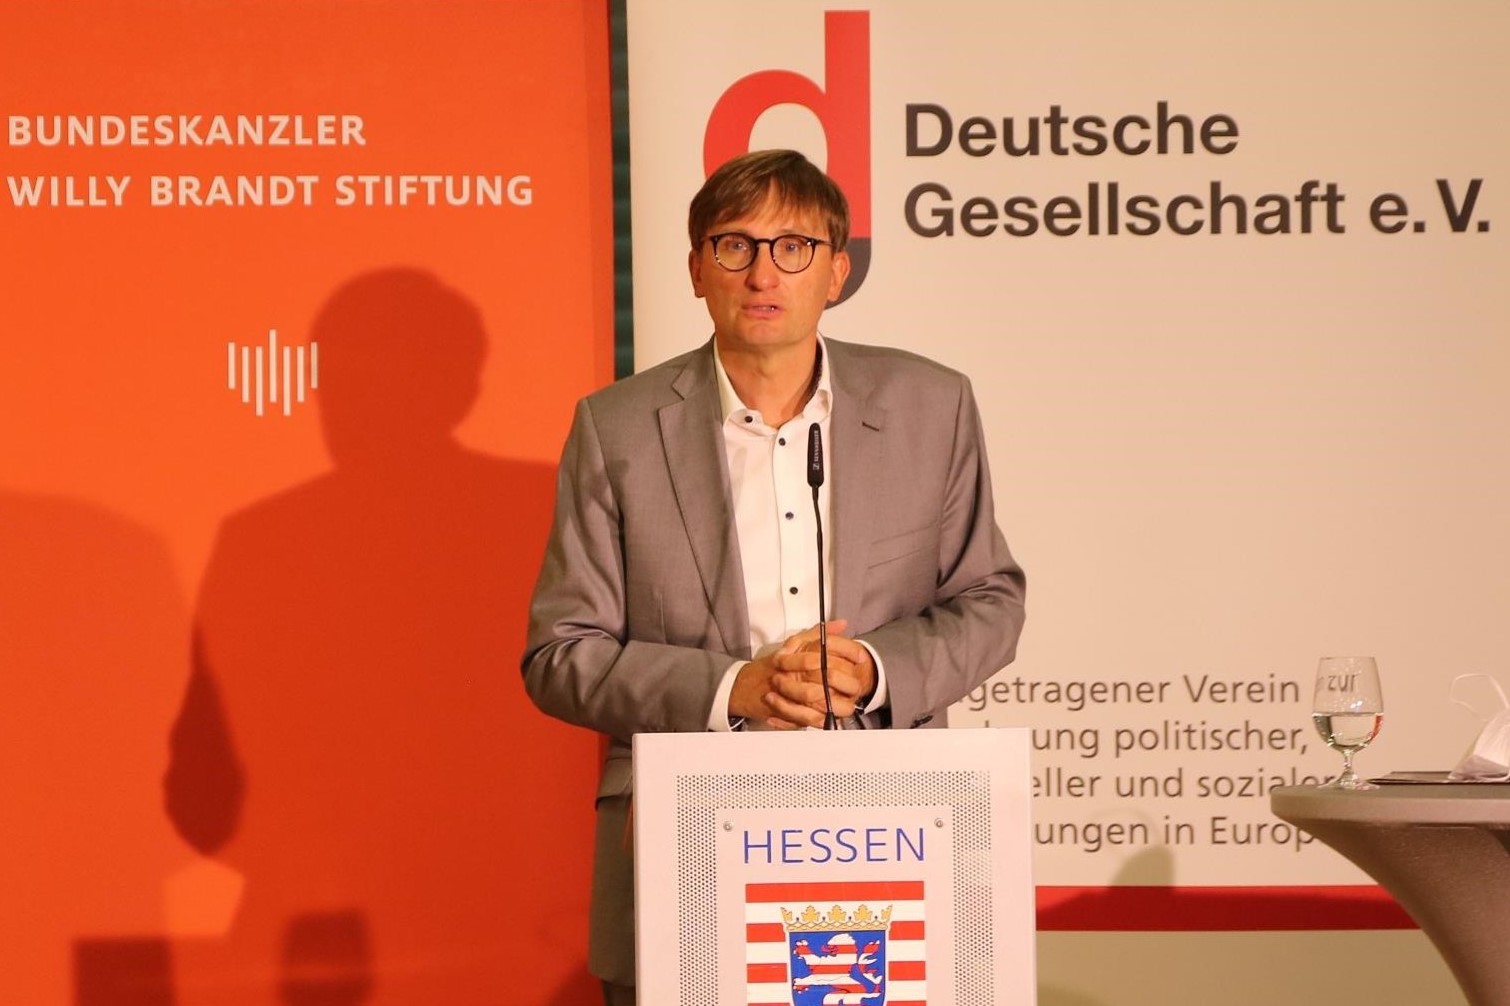 Impulsvortrag von Prof. Dr. Sönke Neitzel zum Thema "Demokratiegeschichte in der Bundeswehr" © Deutsche Gesellschaft e.V.